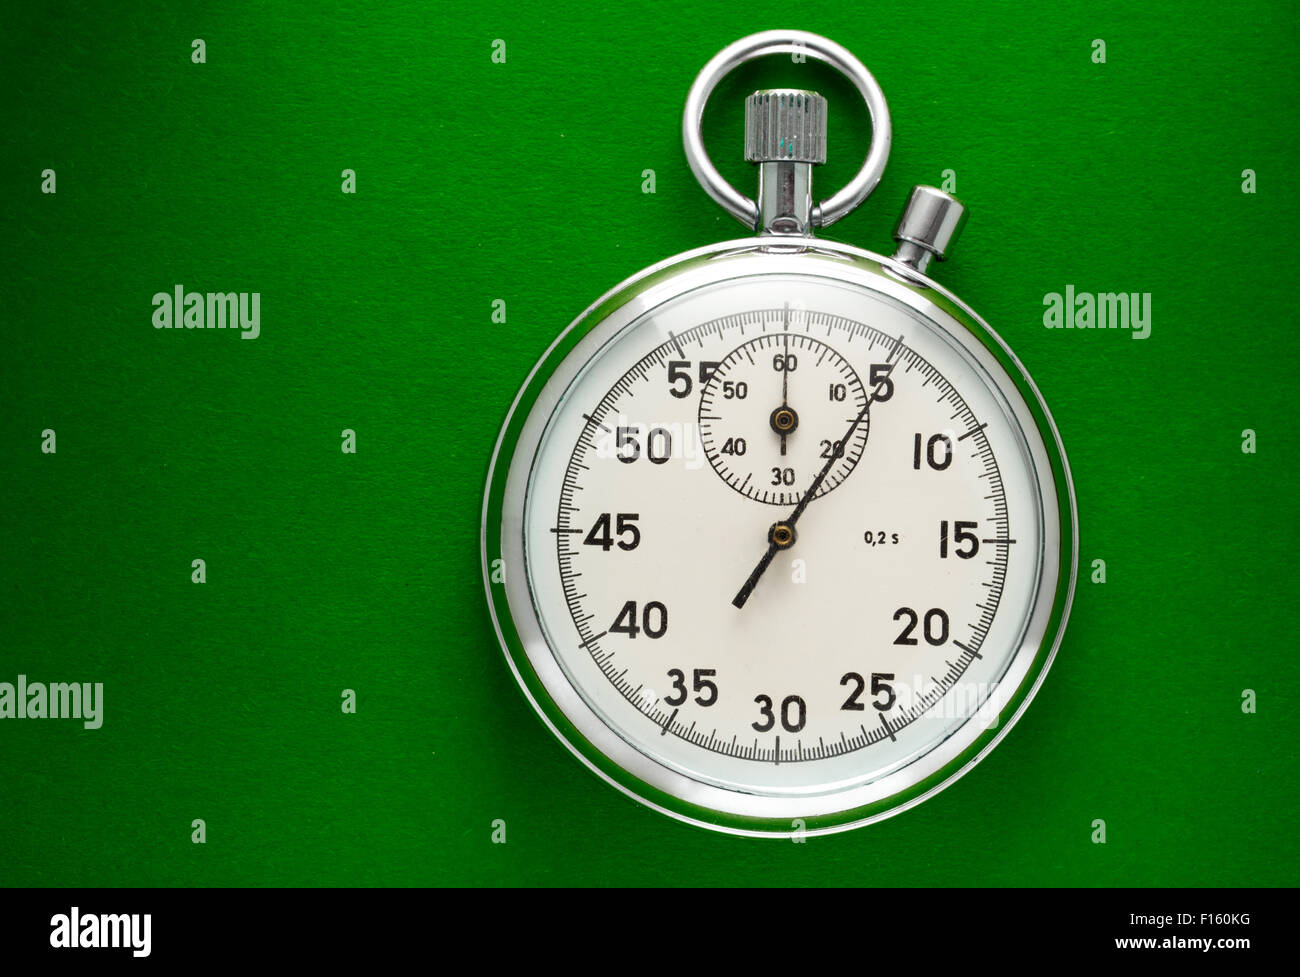 Unico cronometro closeup sul libro verde sullo sfondo Foto Stock